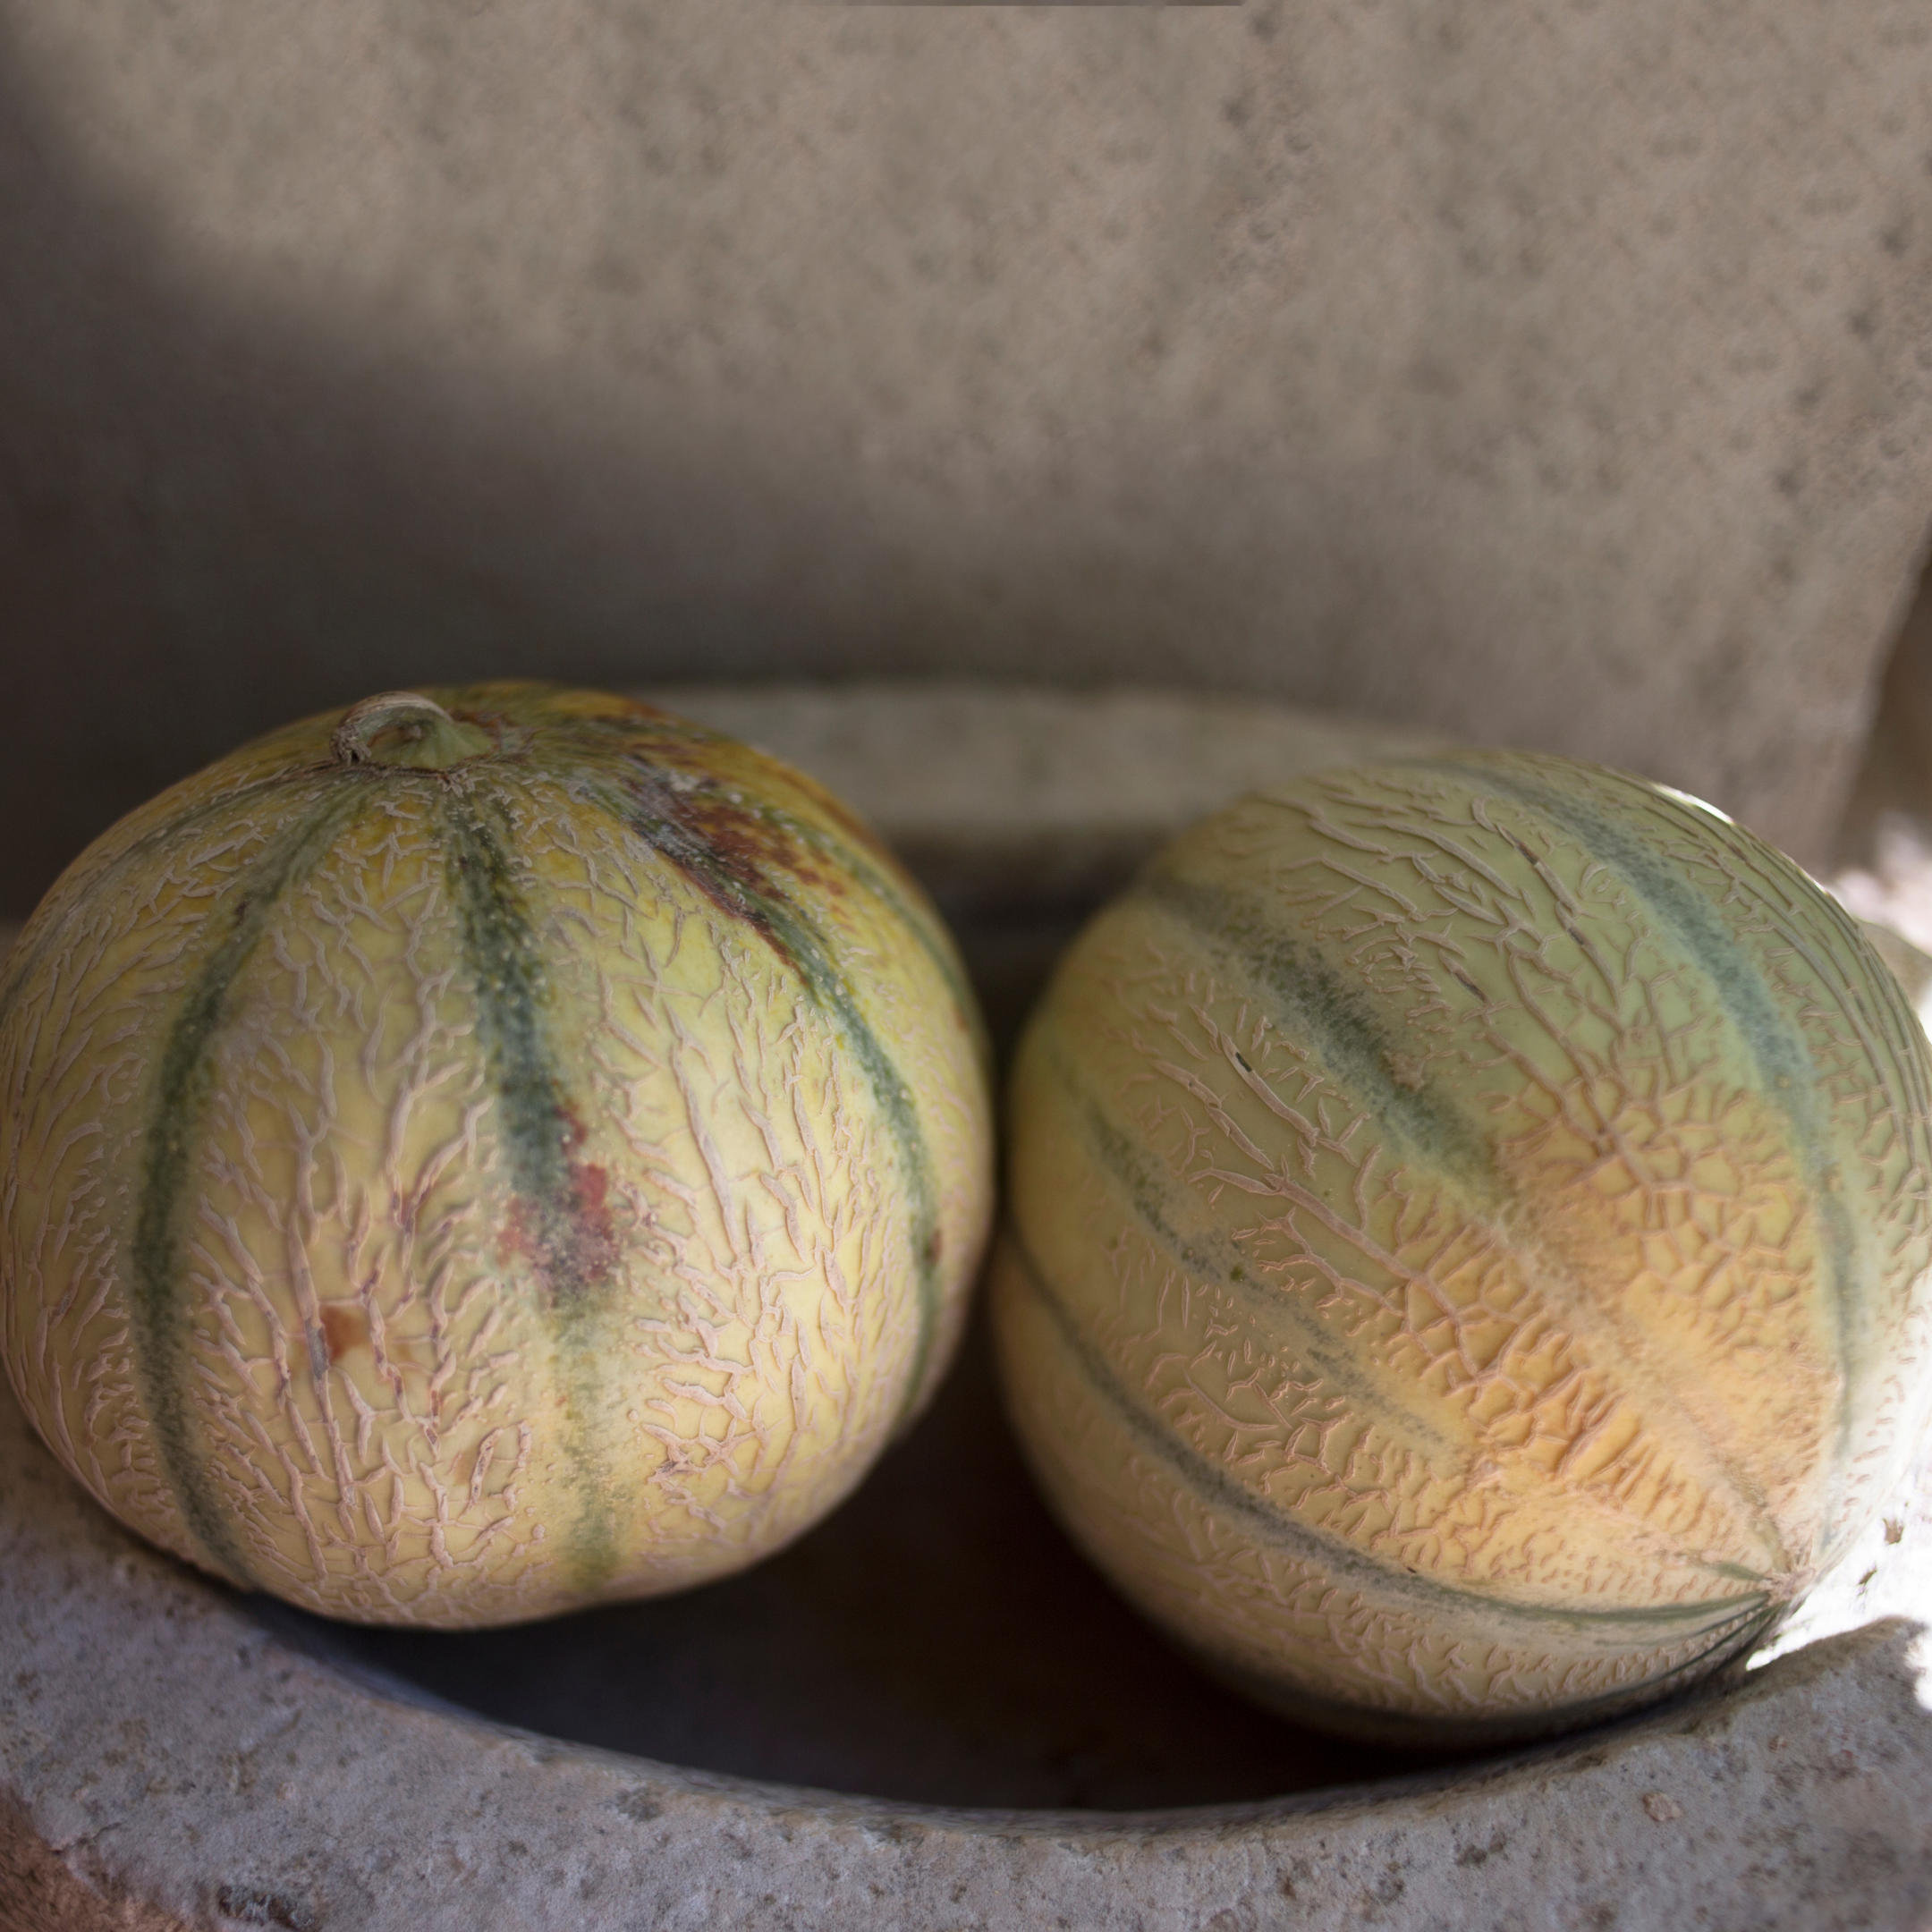 Melon charentais précoce du Roc Vedrantais aux Jardins de Baugnac